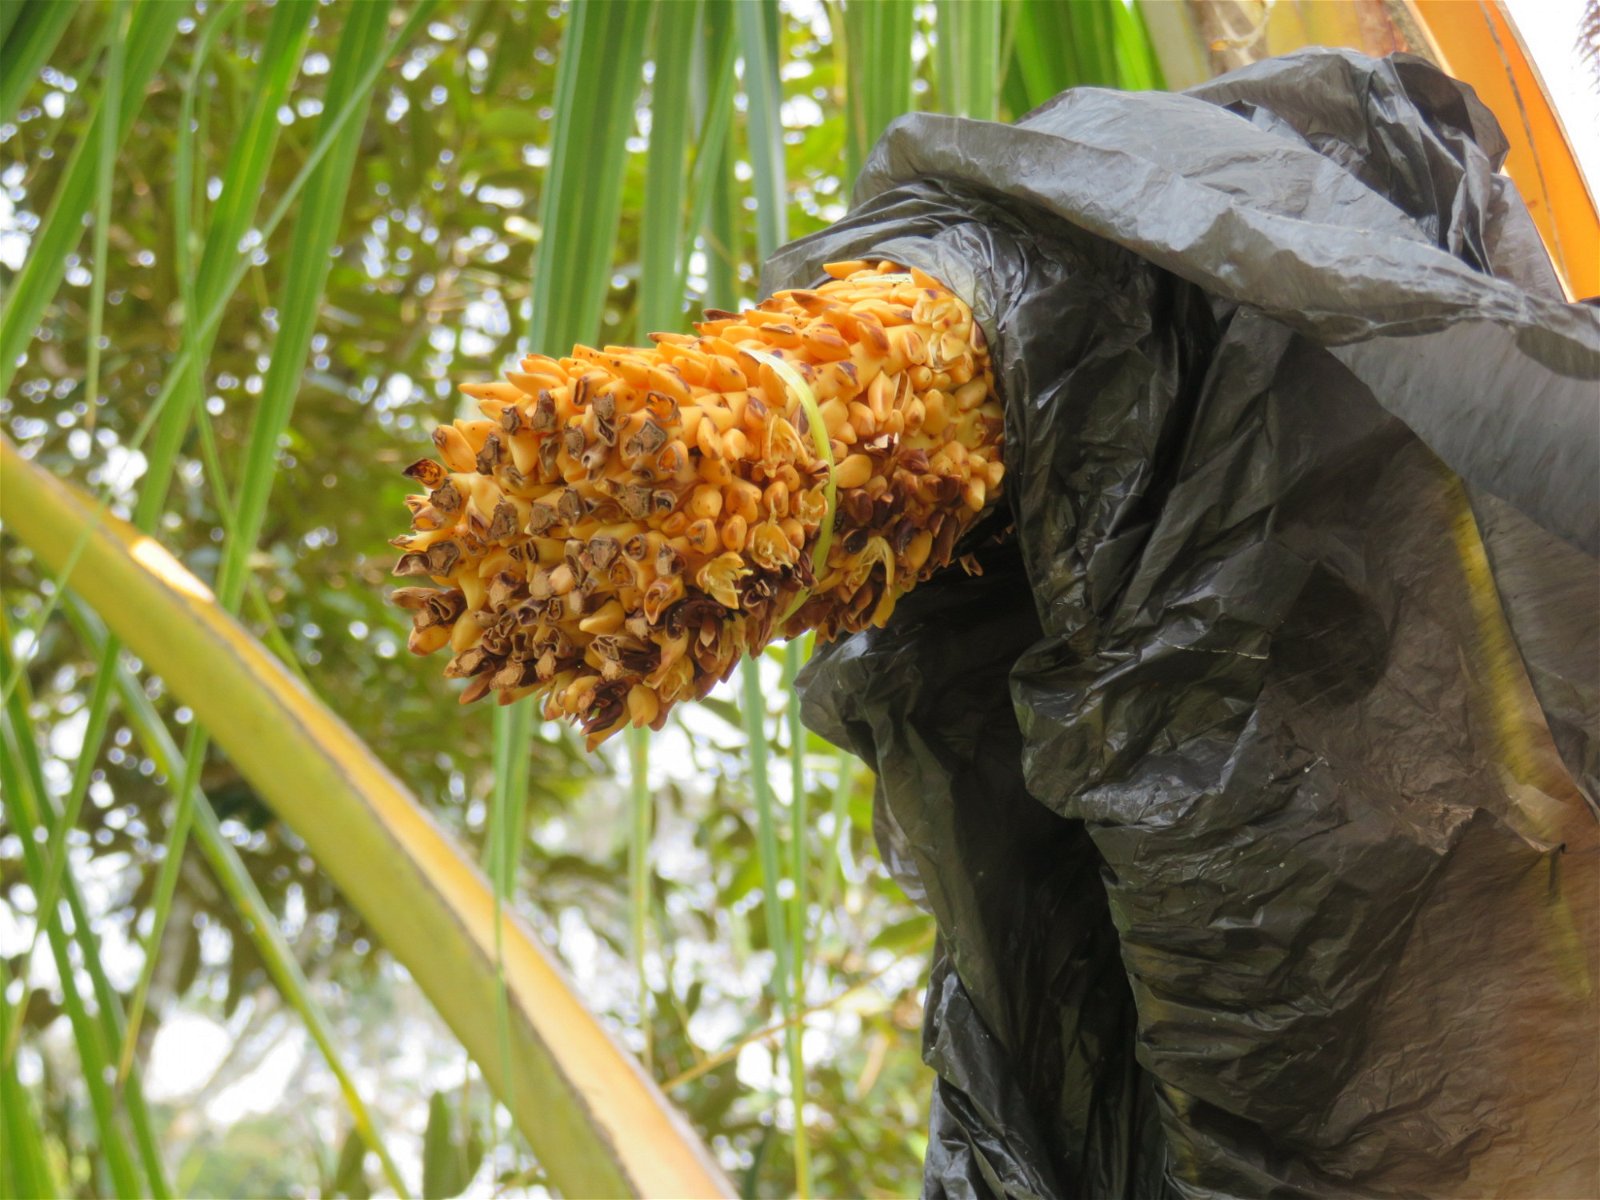 椰子树长出还未结果的椰花茎时，形如玉蜀黍，剥开椰子后，可见黄色的椰花茎。